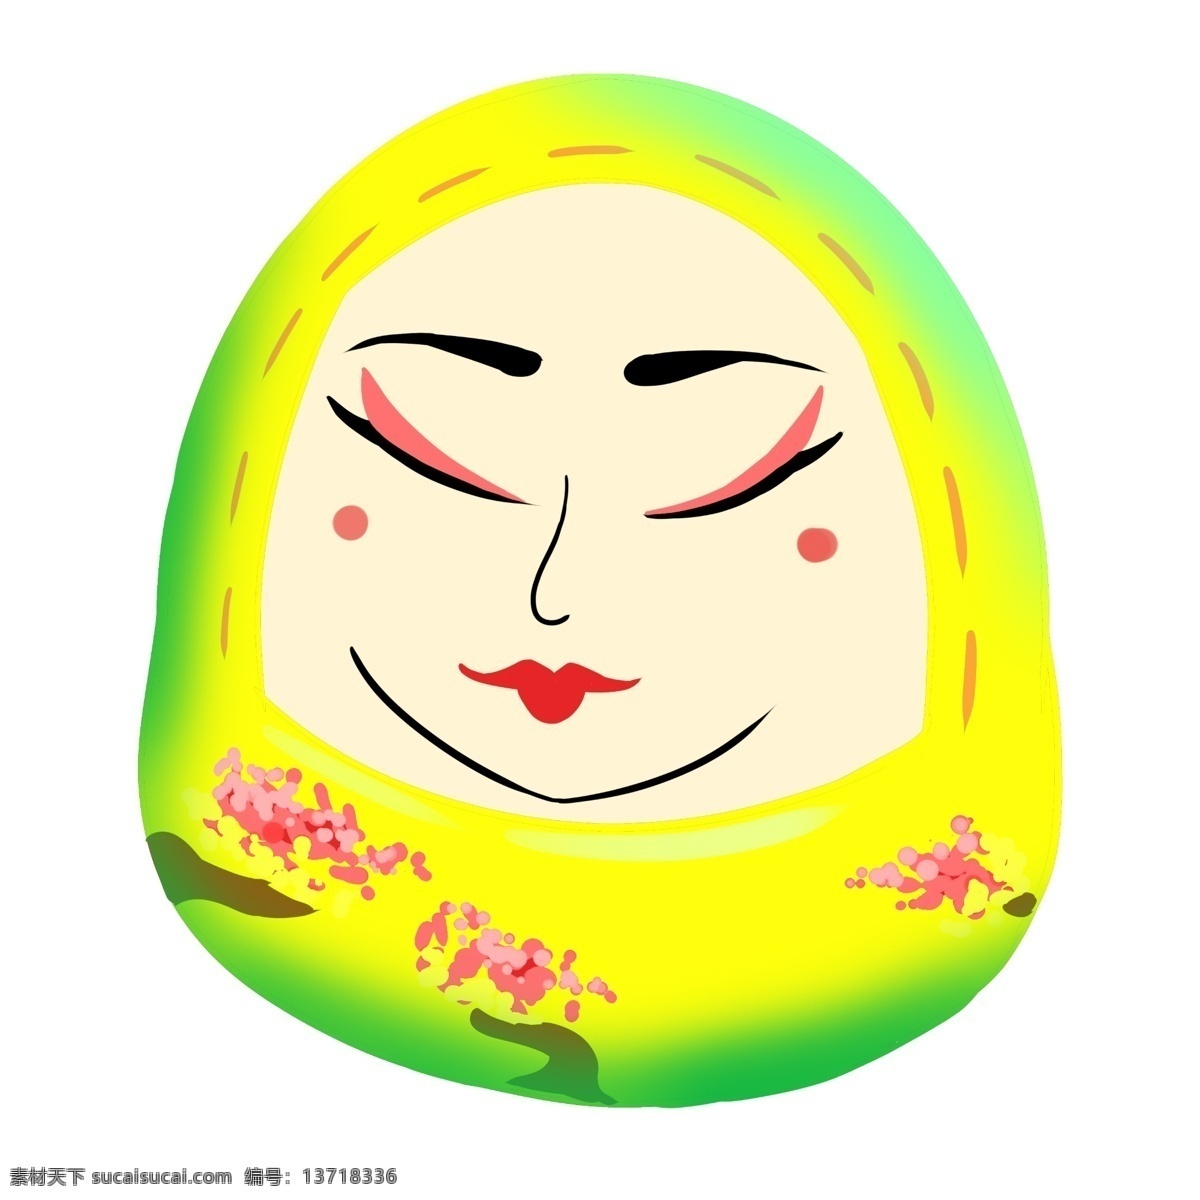 黄色 脸谱 日本 插画 黄色的脸谱 卡通插画 日本插画 日本脸谱 脸谱插画 日本玩具 漂亮的脸谱